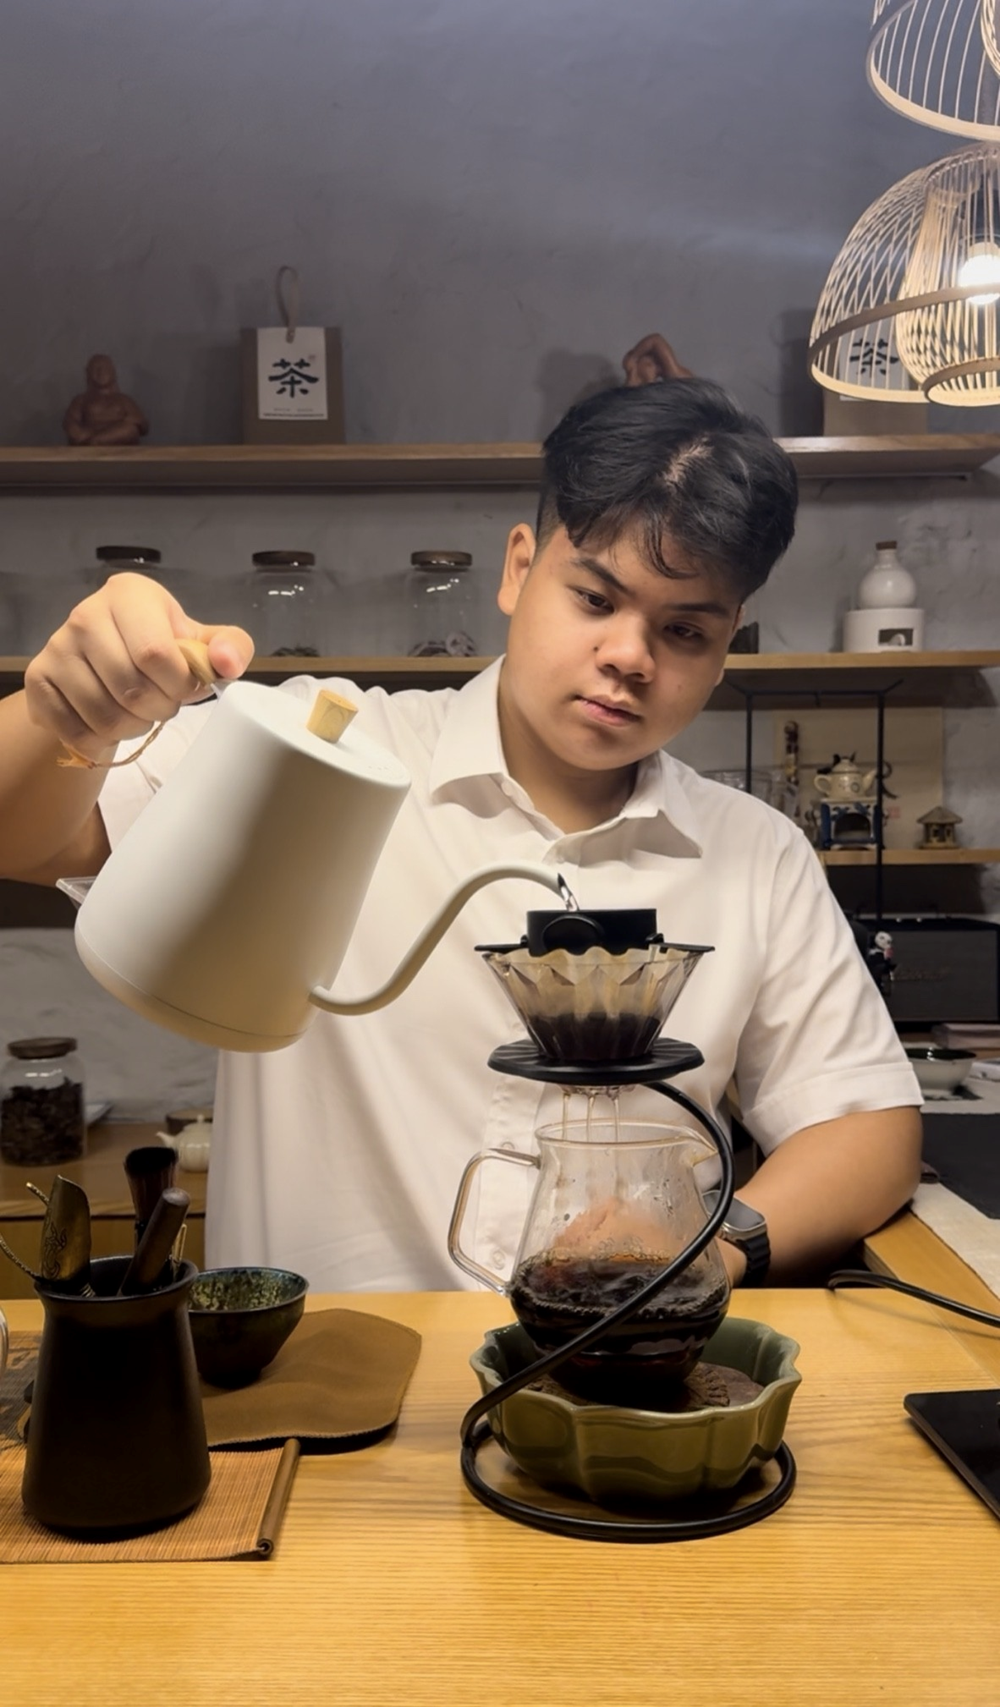 Quán trà đặc biệt, cách người trẻ quảng bá văn hóa Việt  - ảnh 2